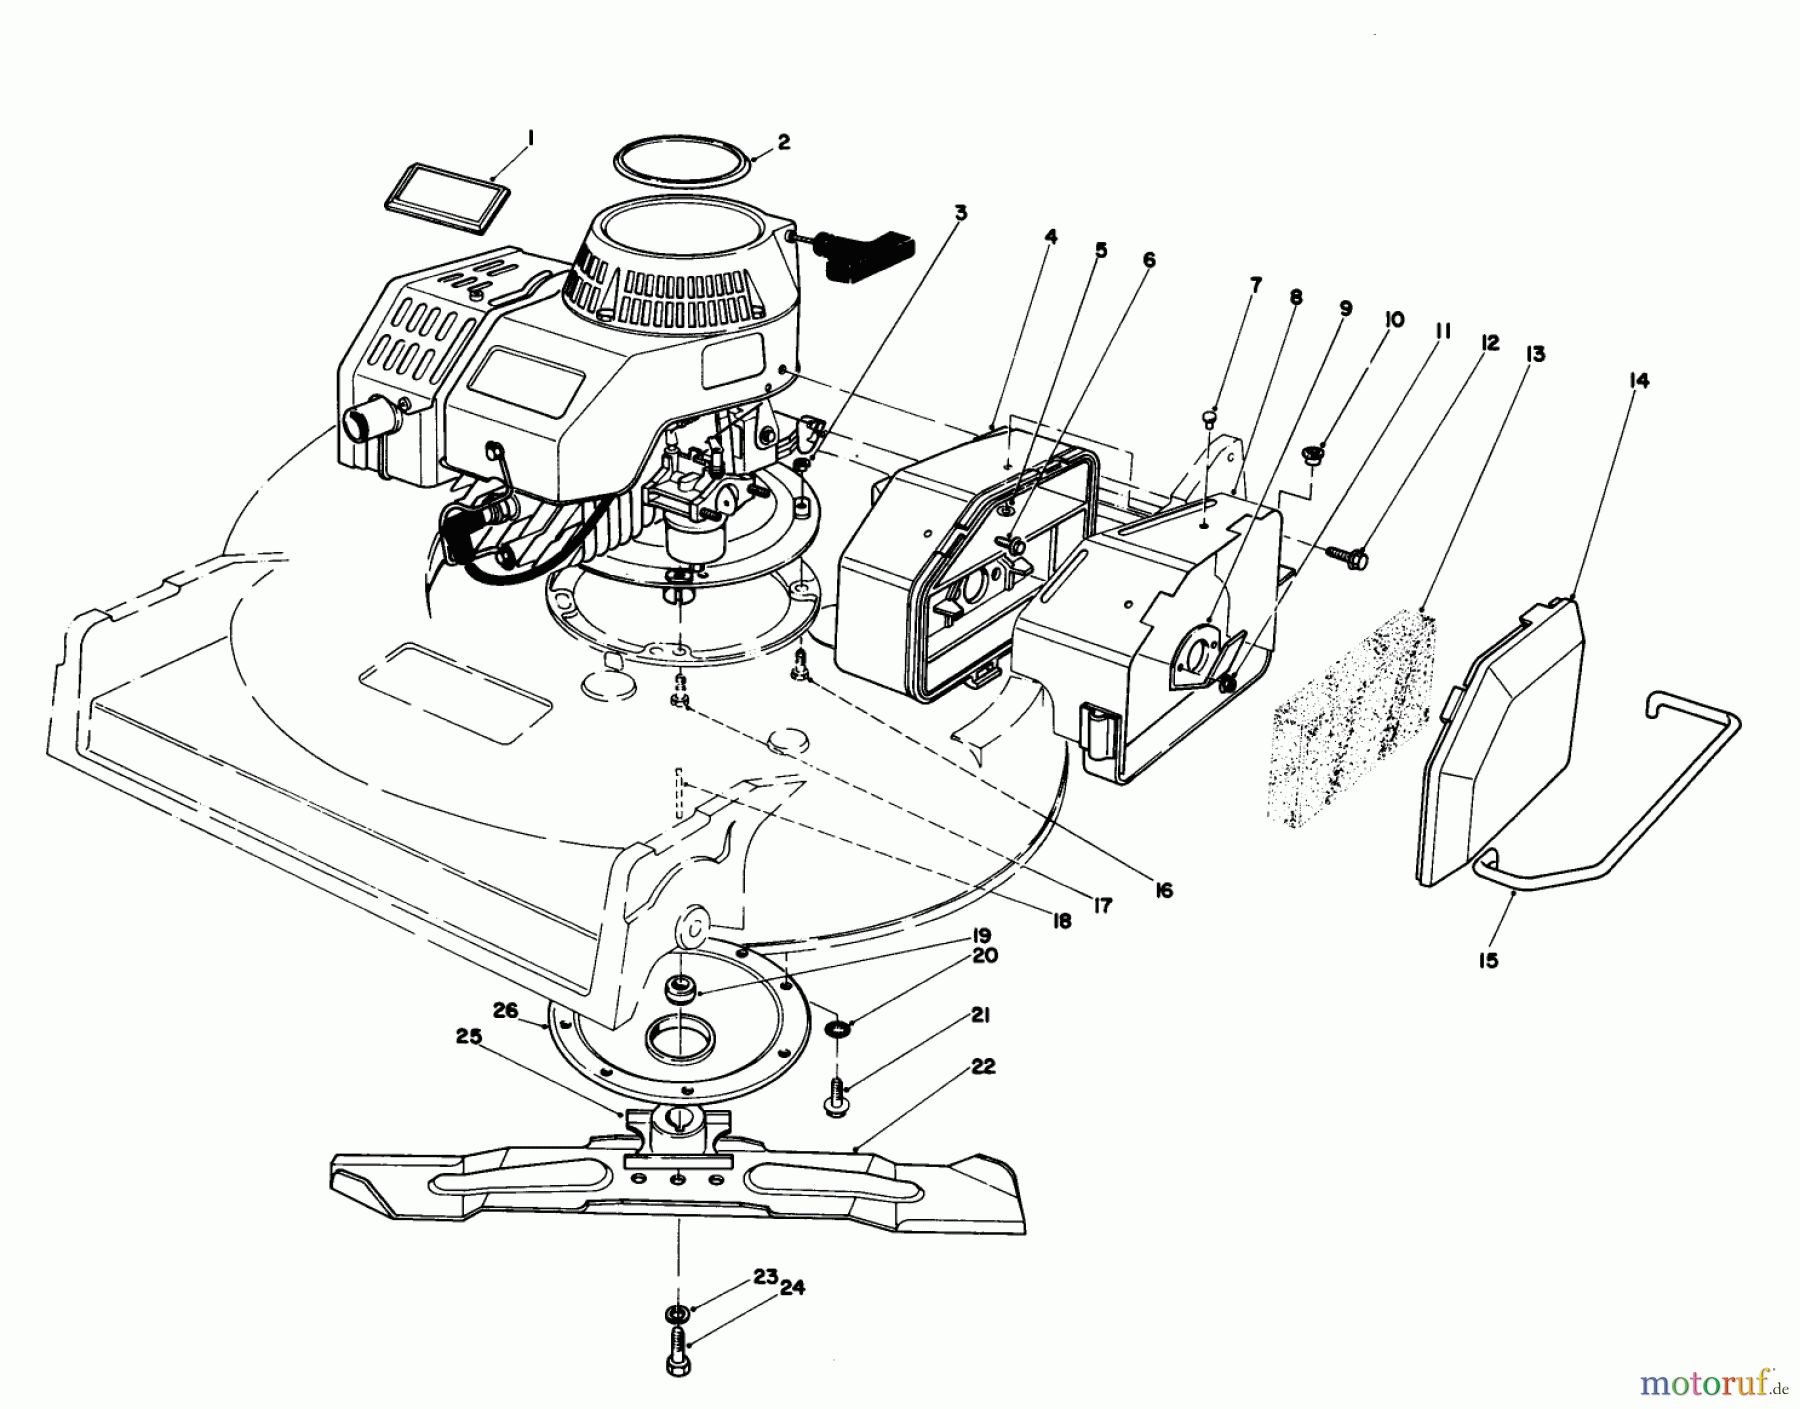  Toro Neu Mowers, Walk-Behind Seite 2 22035 - Toro Lawnmower, 1986 (6000001-6999999) ENGINE ASSEMBLY (MODEL 22030)